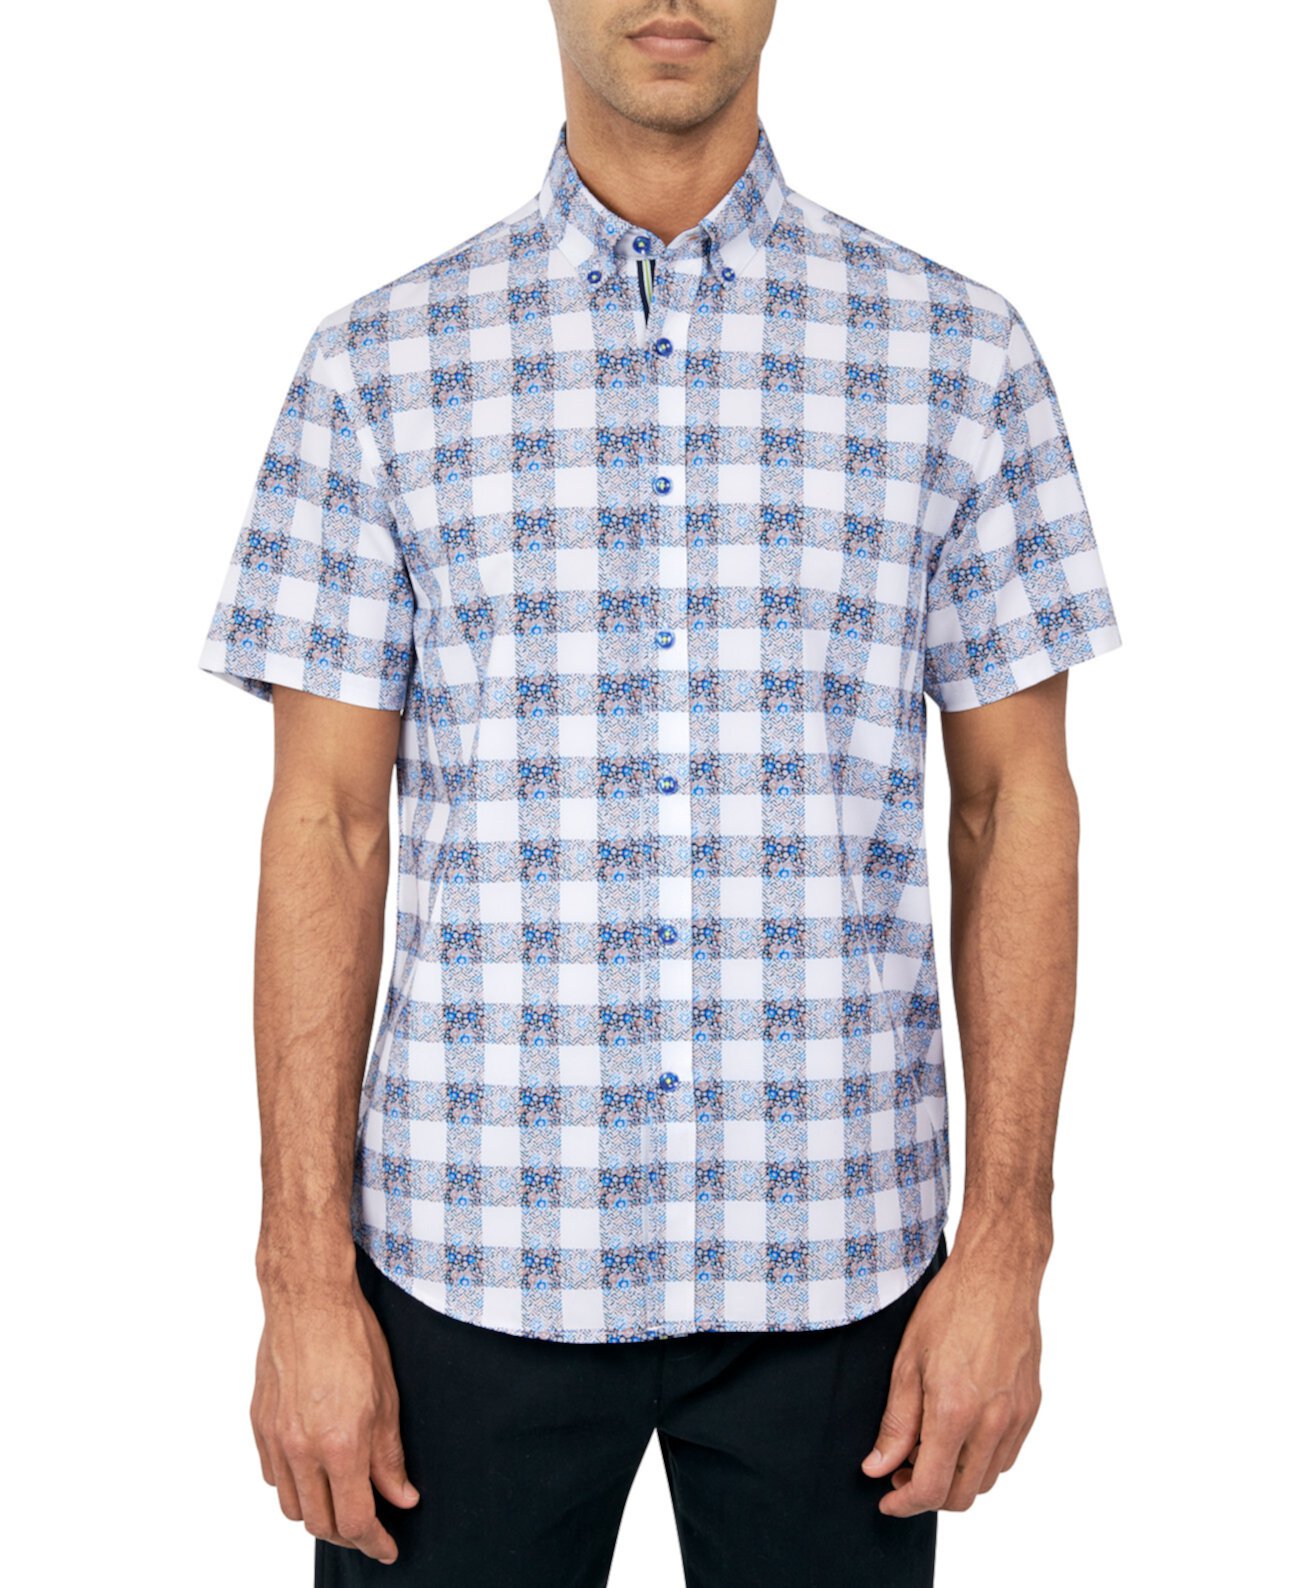 Мужская рубашка на пуговицах, классический крой, без утюга, эластичная, с цветочным принтом в клетку Society of Threads